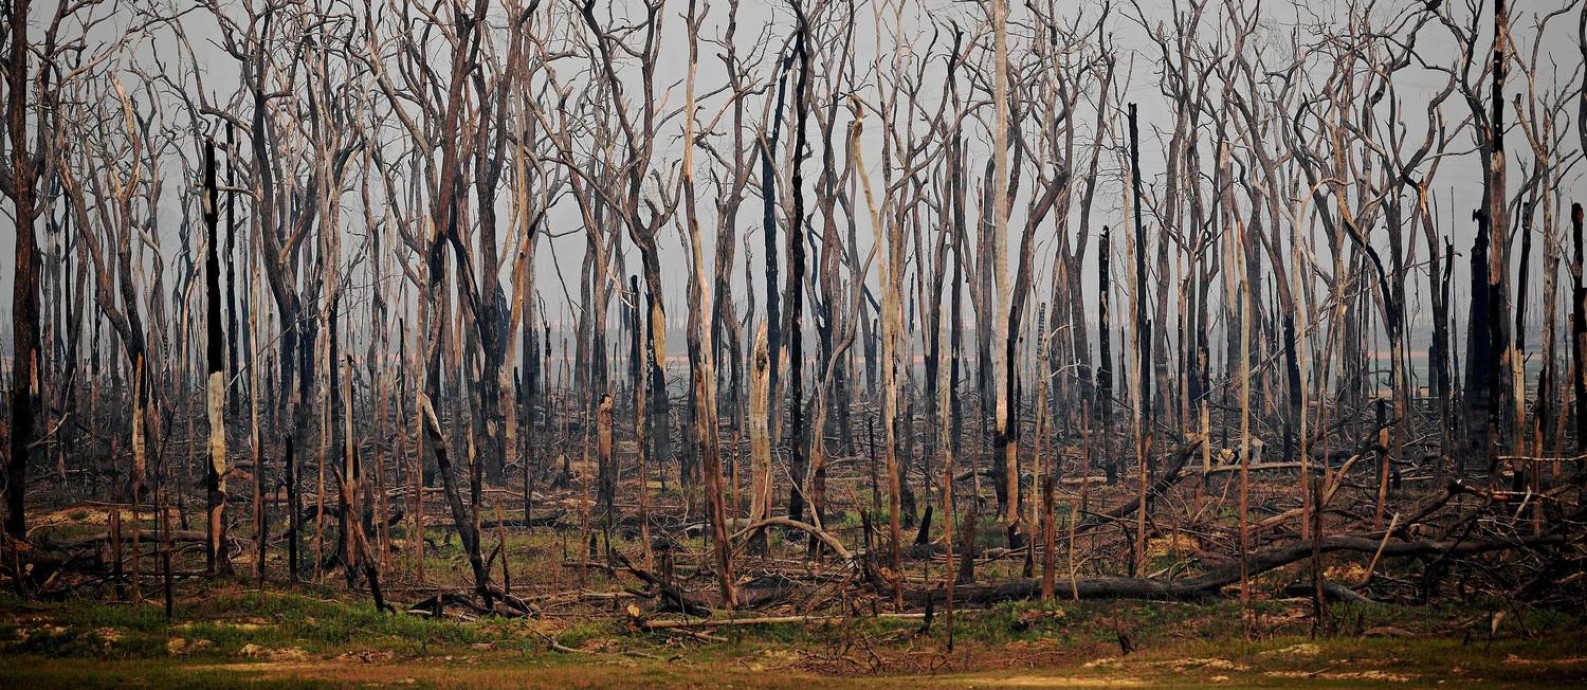 Futuro consumido. Área da Amazônia em Rondônia atingida por queimada em agosto de 2019: a perda de vegetação eleva a temperatura da floresta, afetando o regime de chuvas, um fator decisivo para a produção agrícola do país Foto: CARL DE SOUZA / AFP